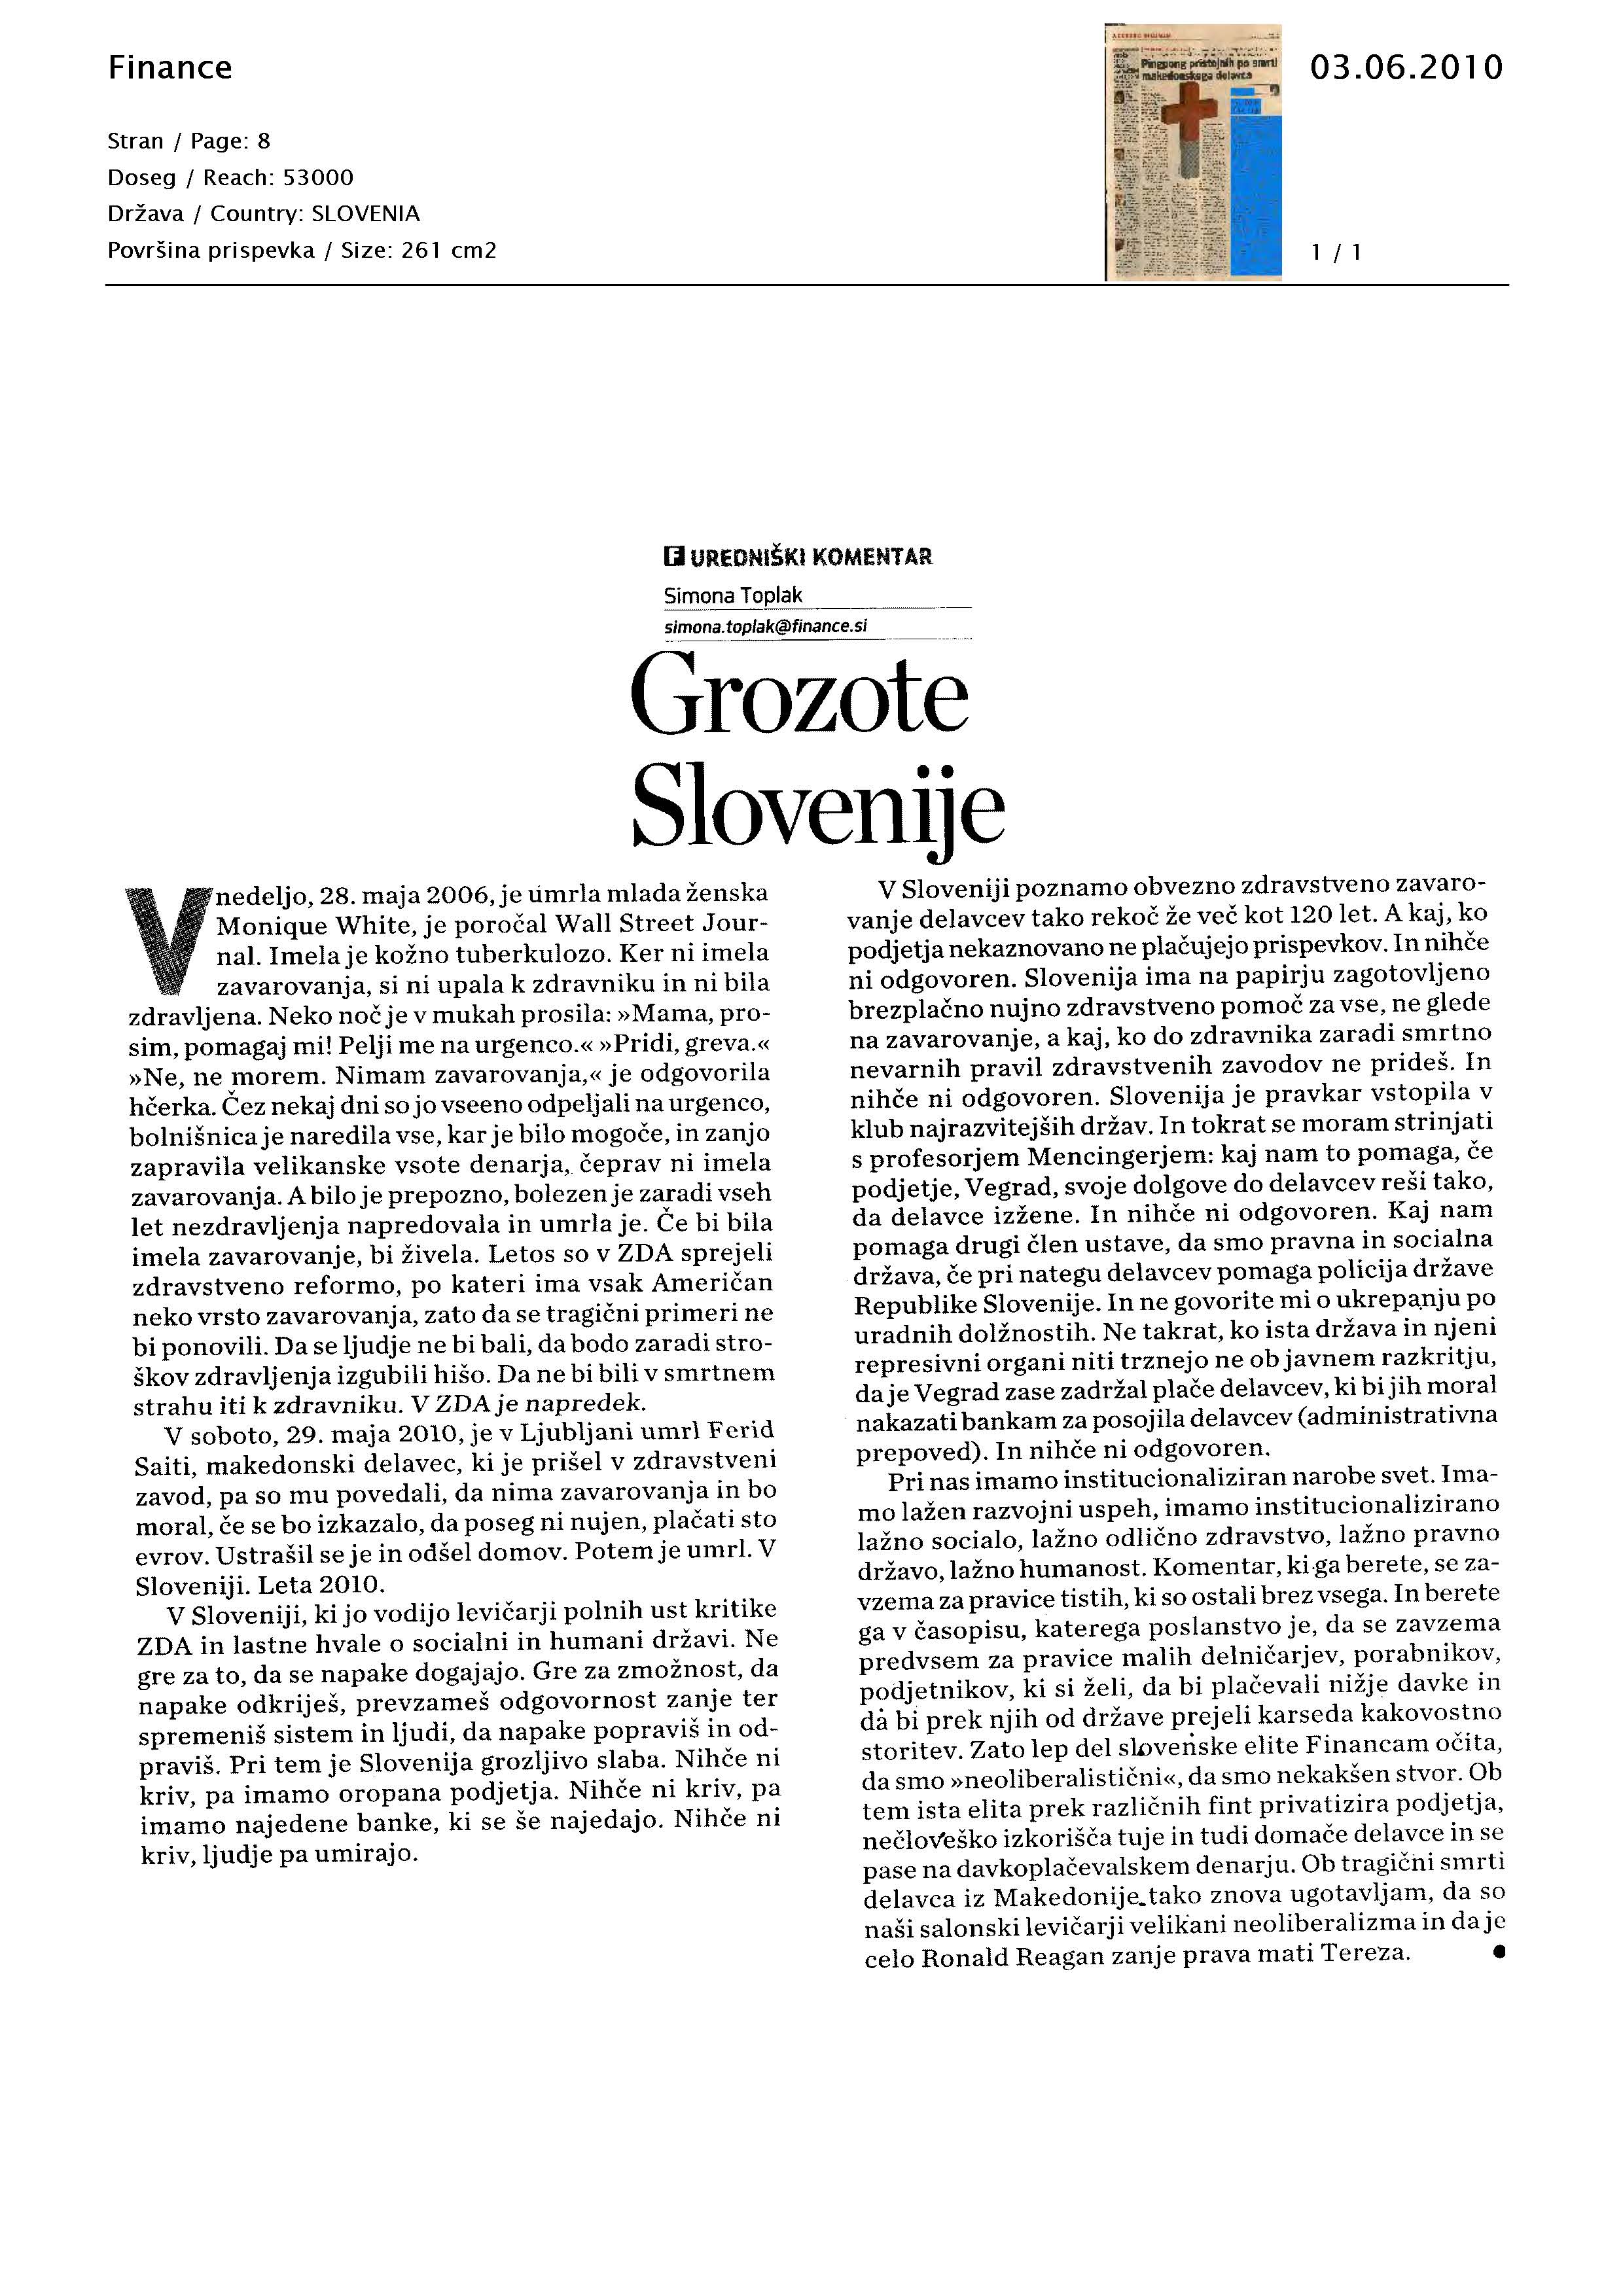 Grozote_Slovenije